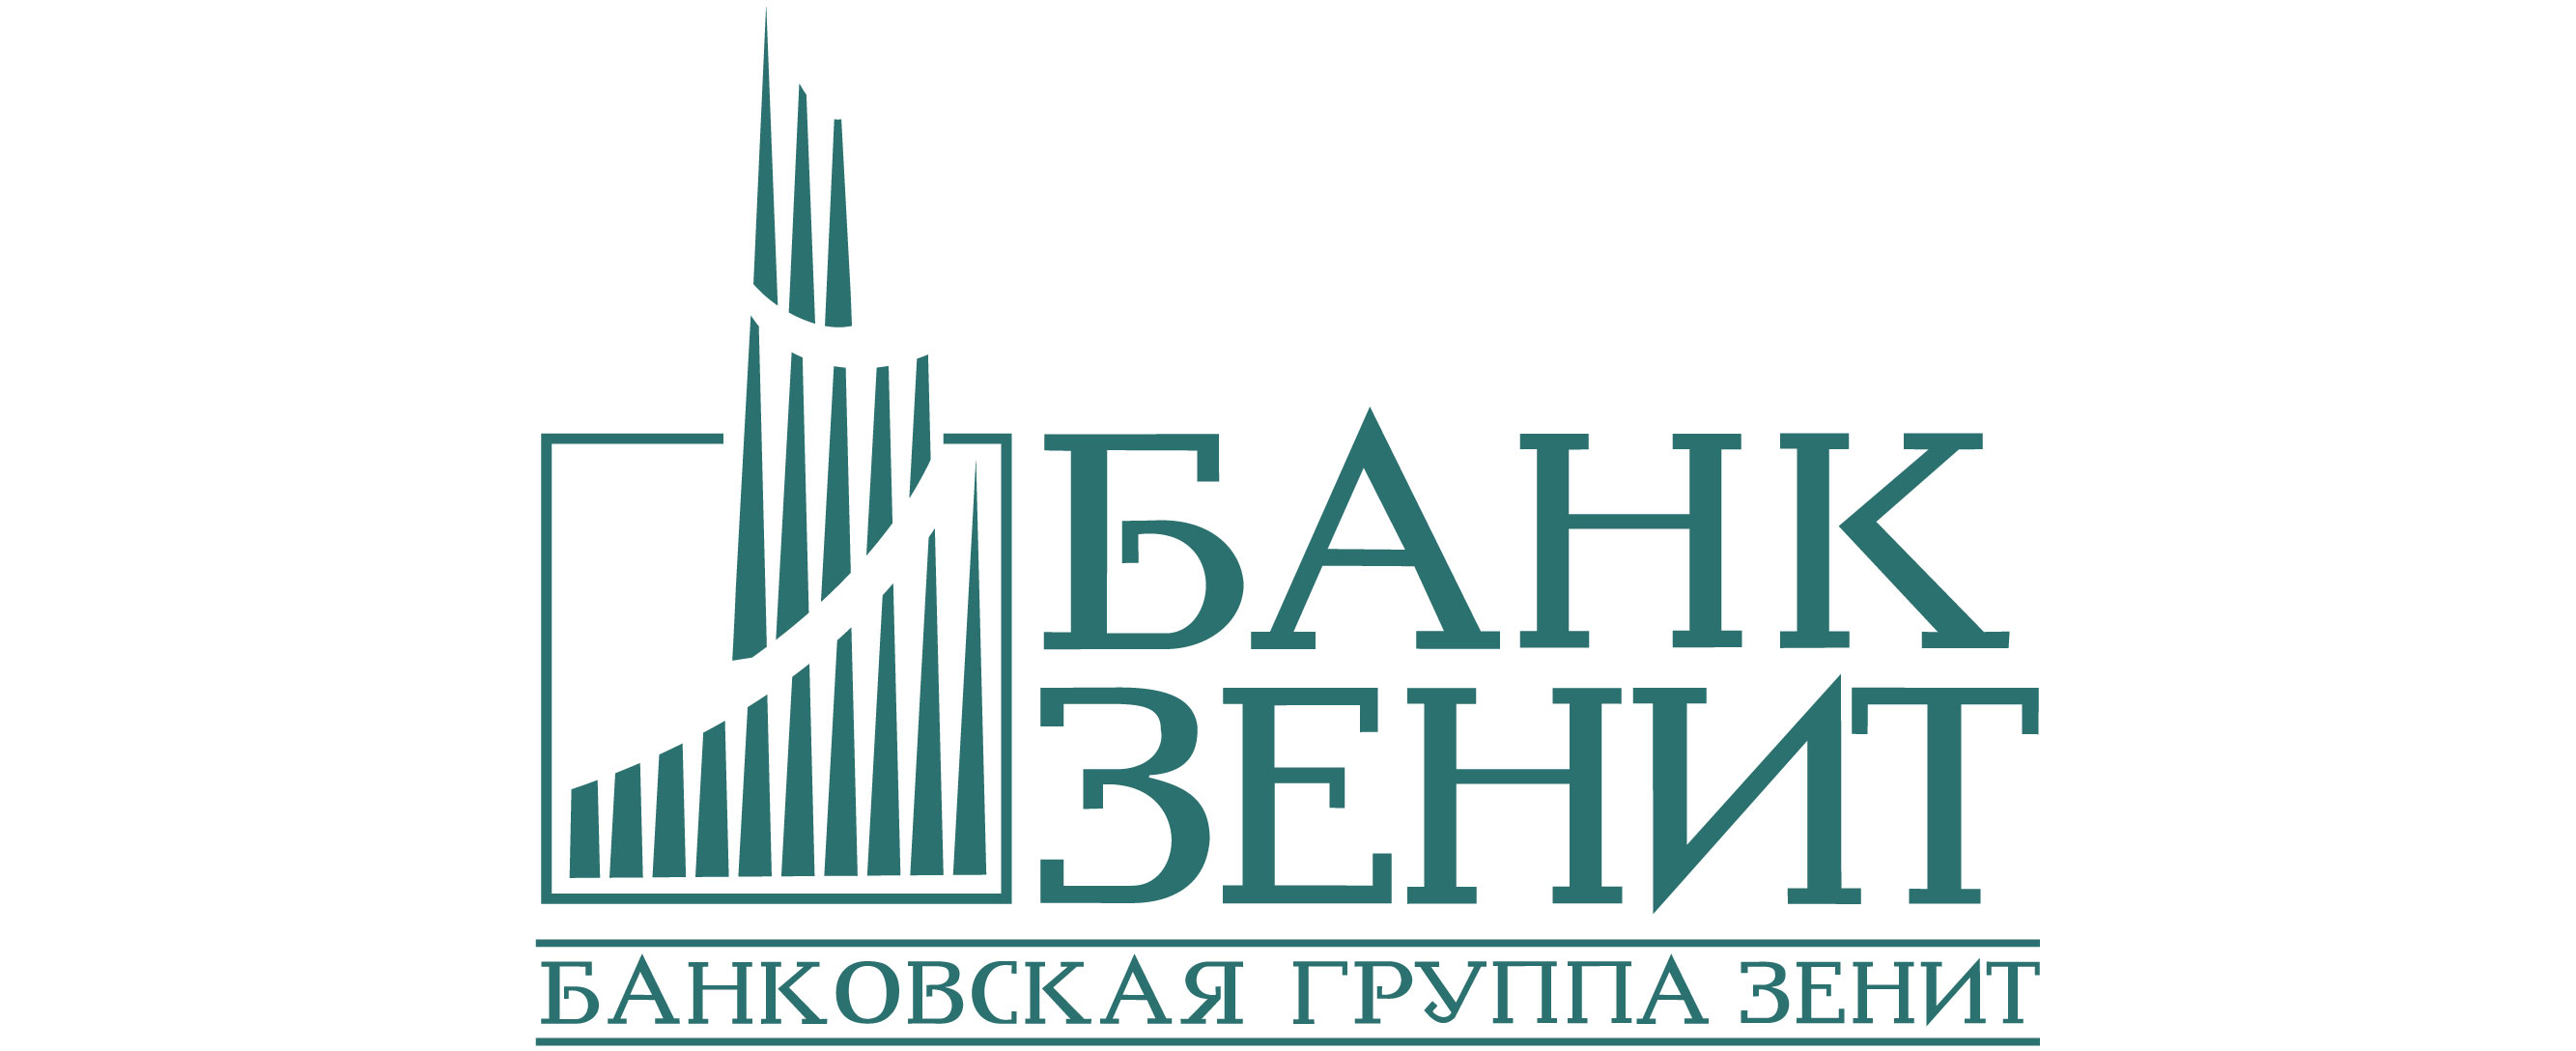 Новые функции в удобном интерфейсе: Банк ЗЕНИТ обновил интернет- и мобильный банк